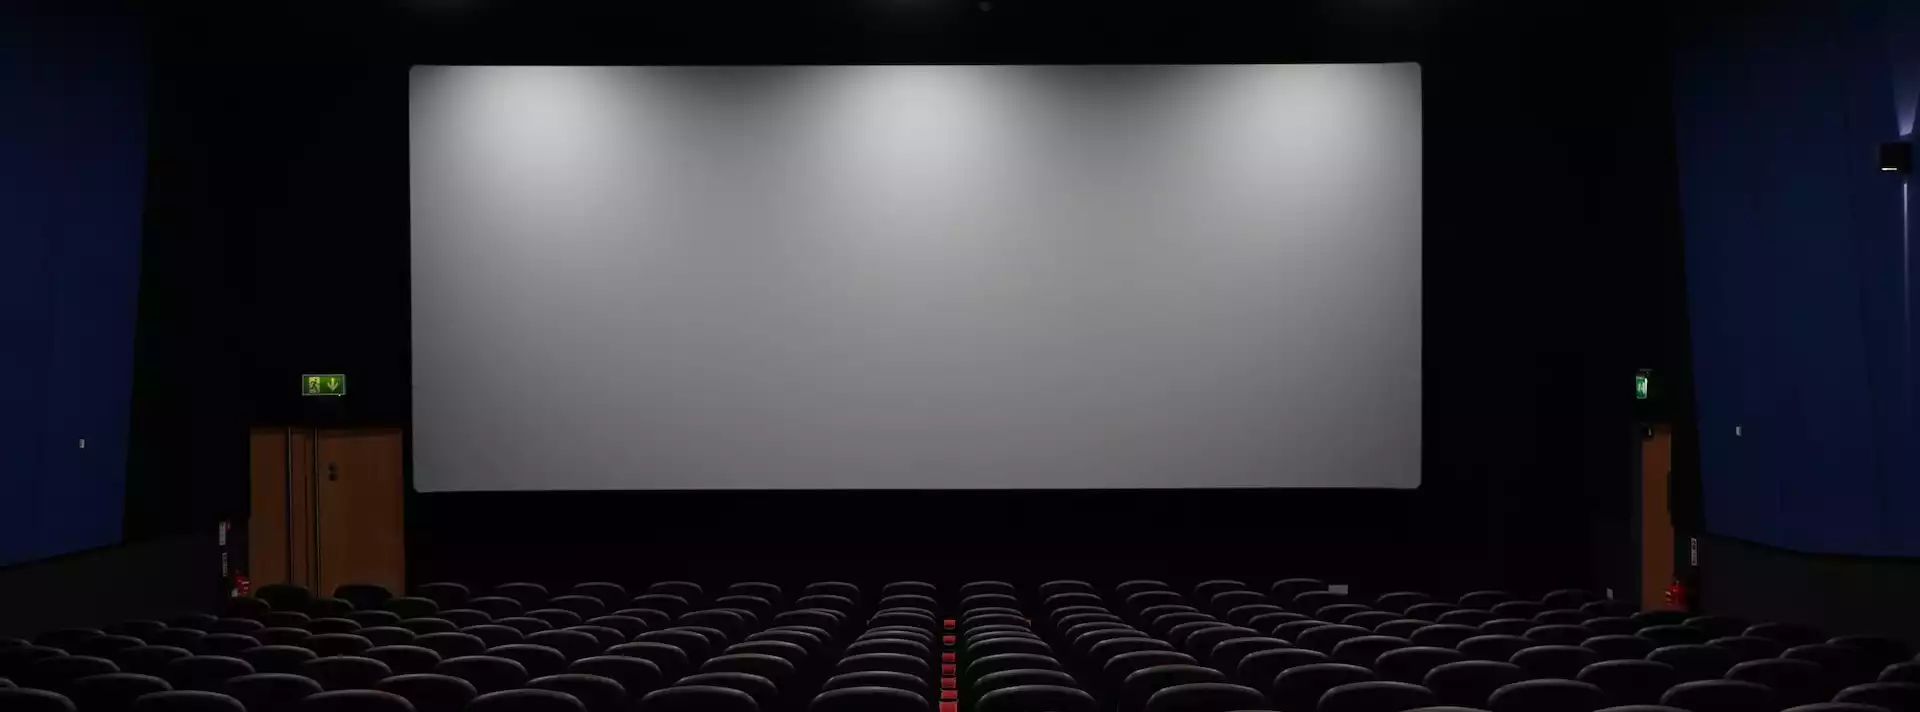 Mit der Kartensteuer als Vergnügungsteuer bringen auch Kinobesuche in manchen Kommunen extra Abgaben für die Gemeinschafft